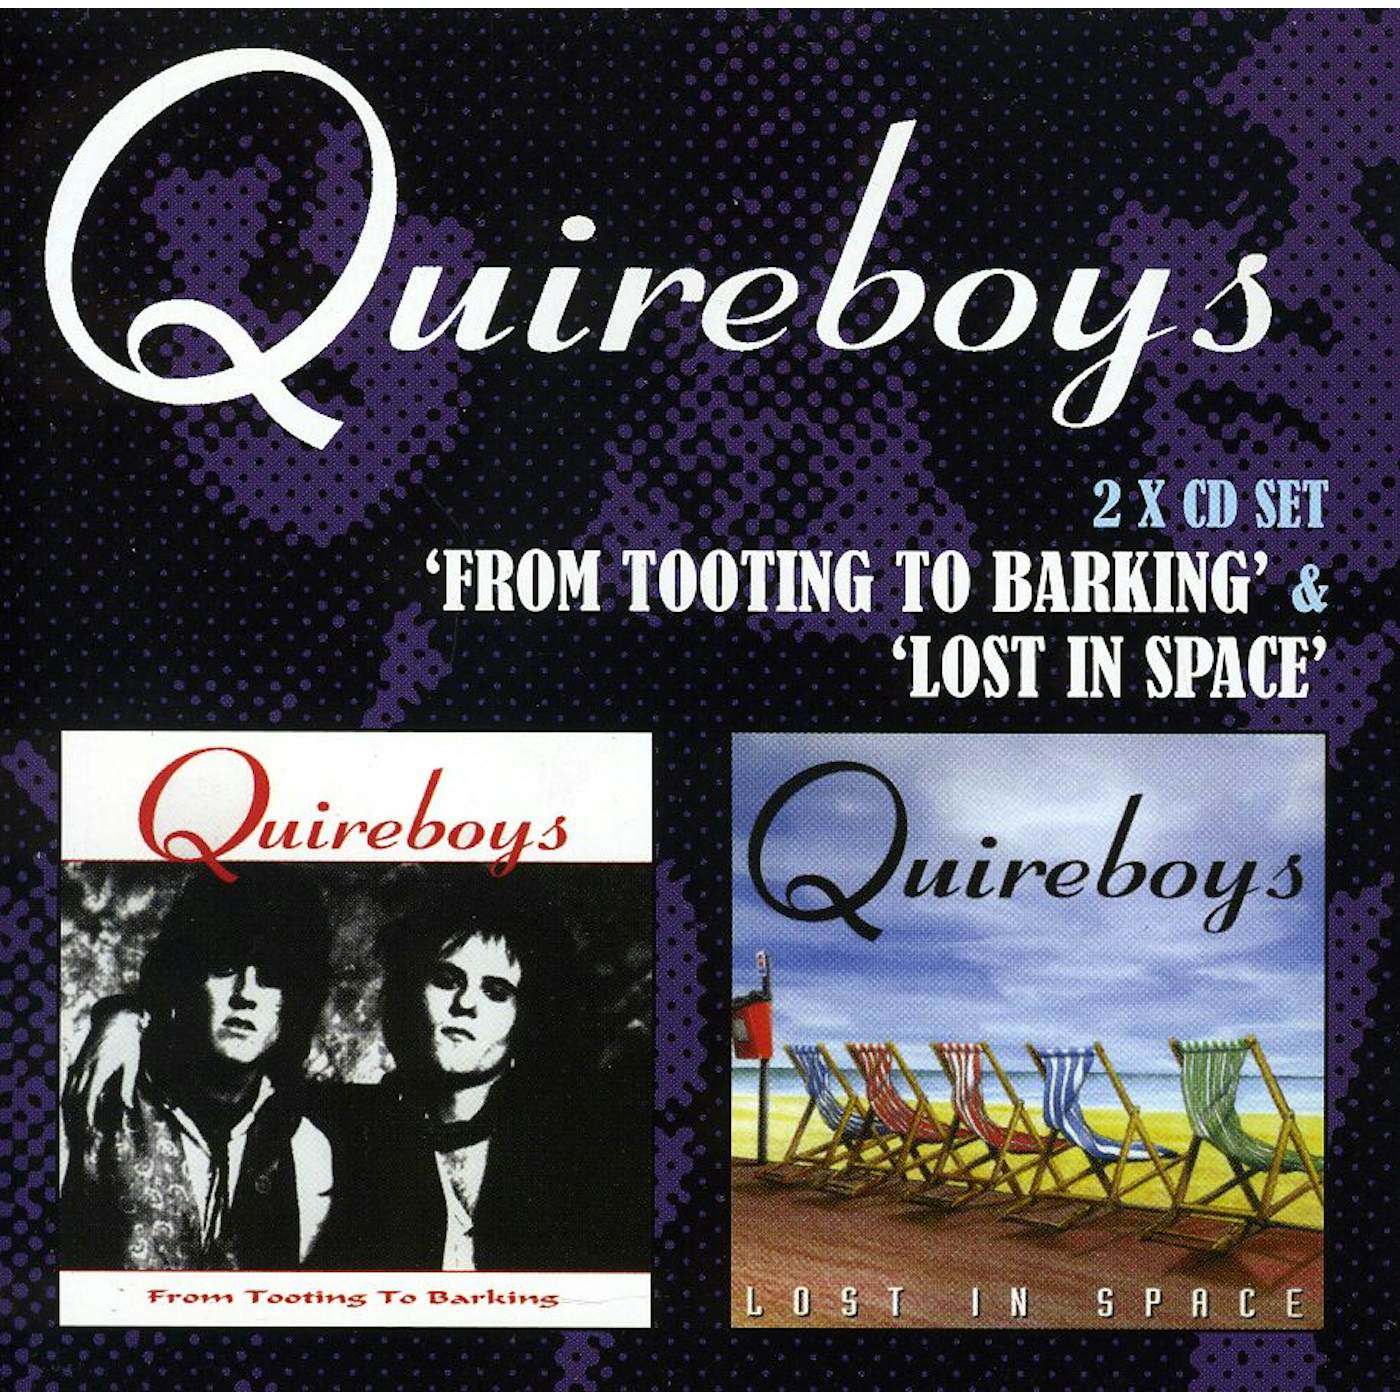 The Quireboys CD